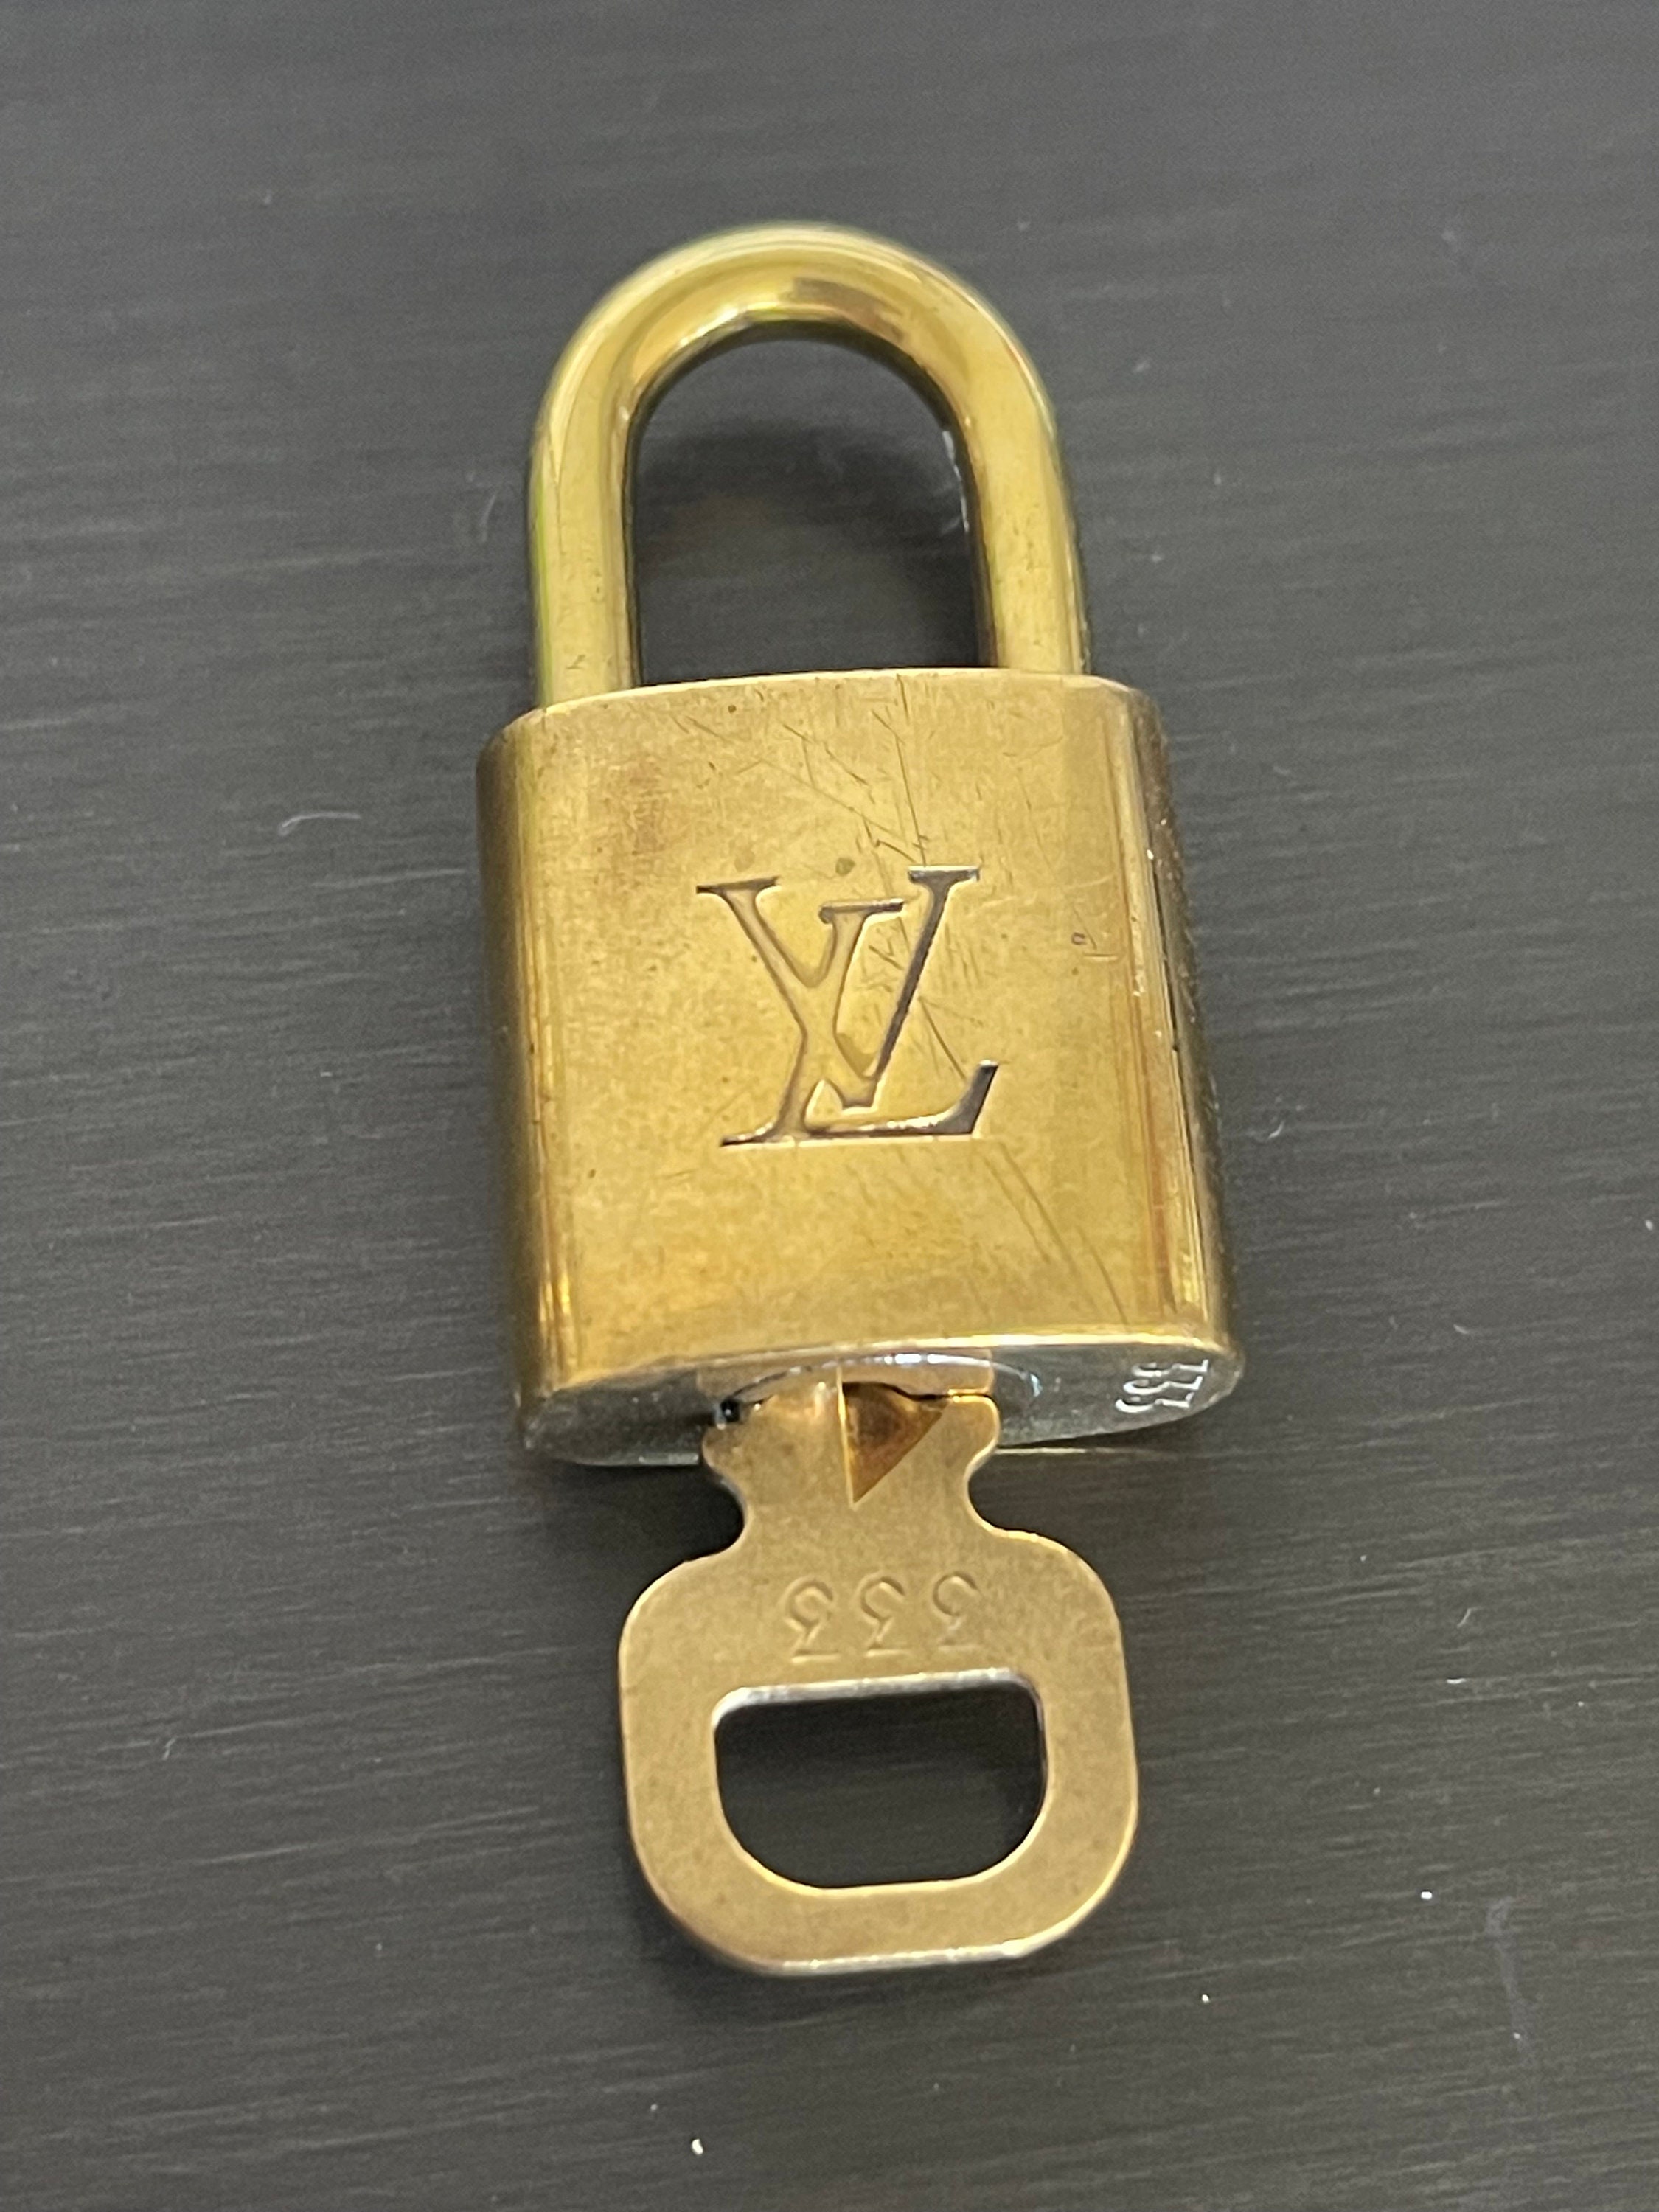 LV lock necklace #323 (no key)